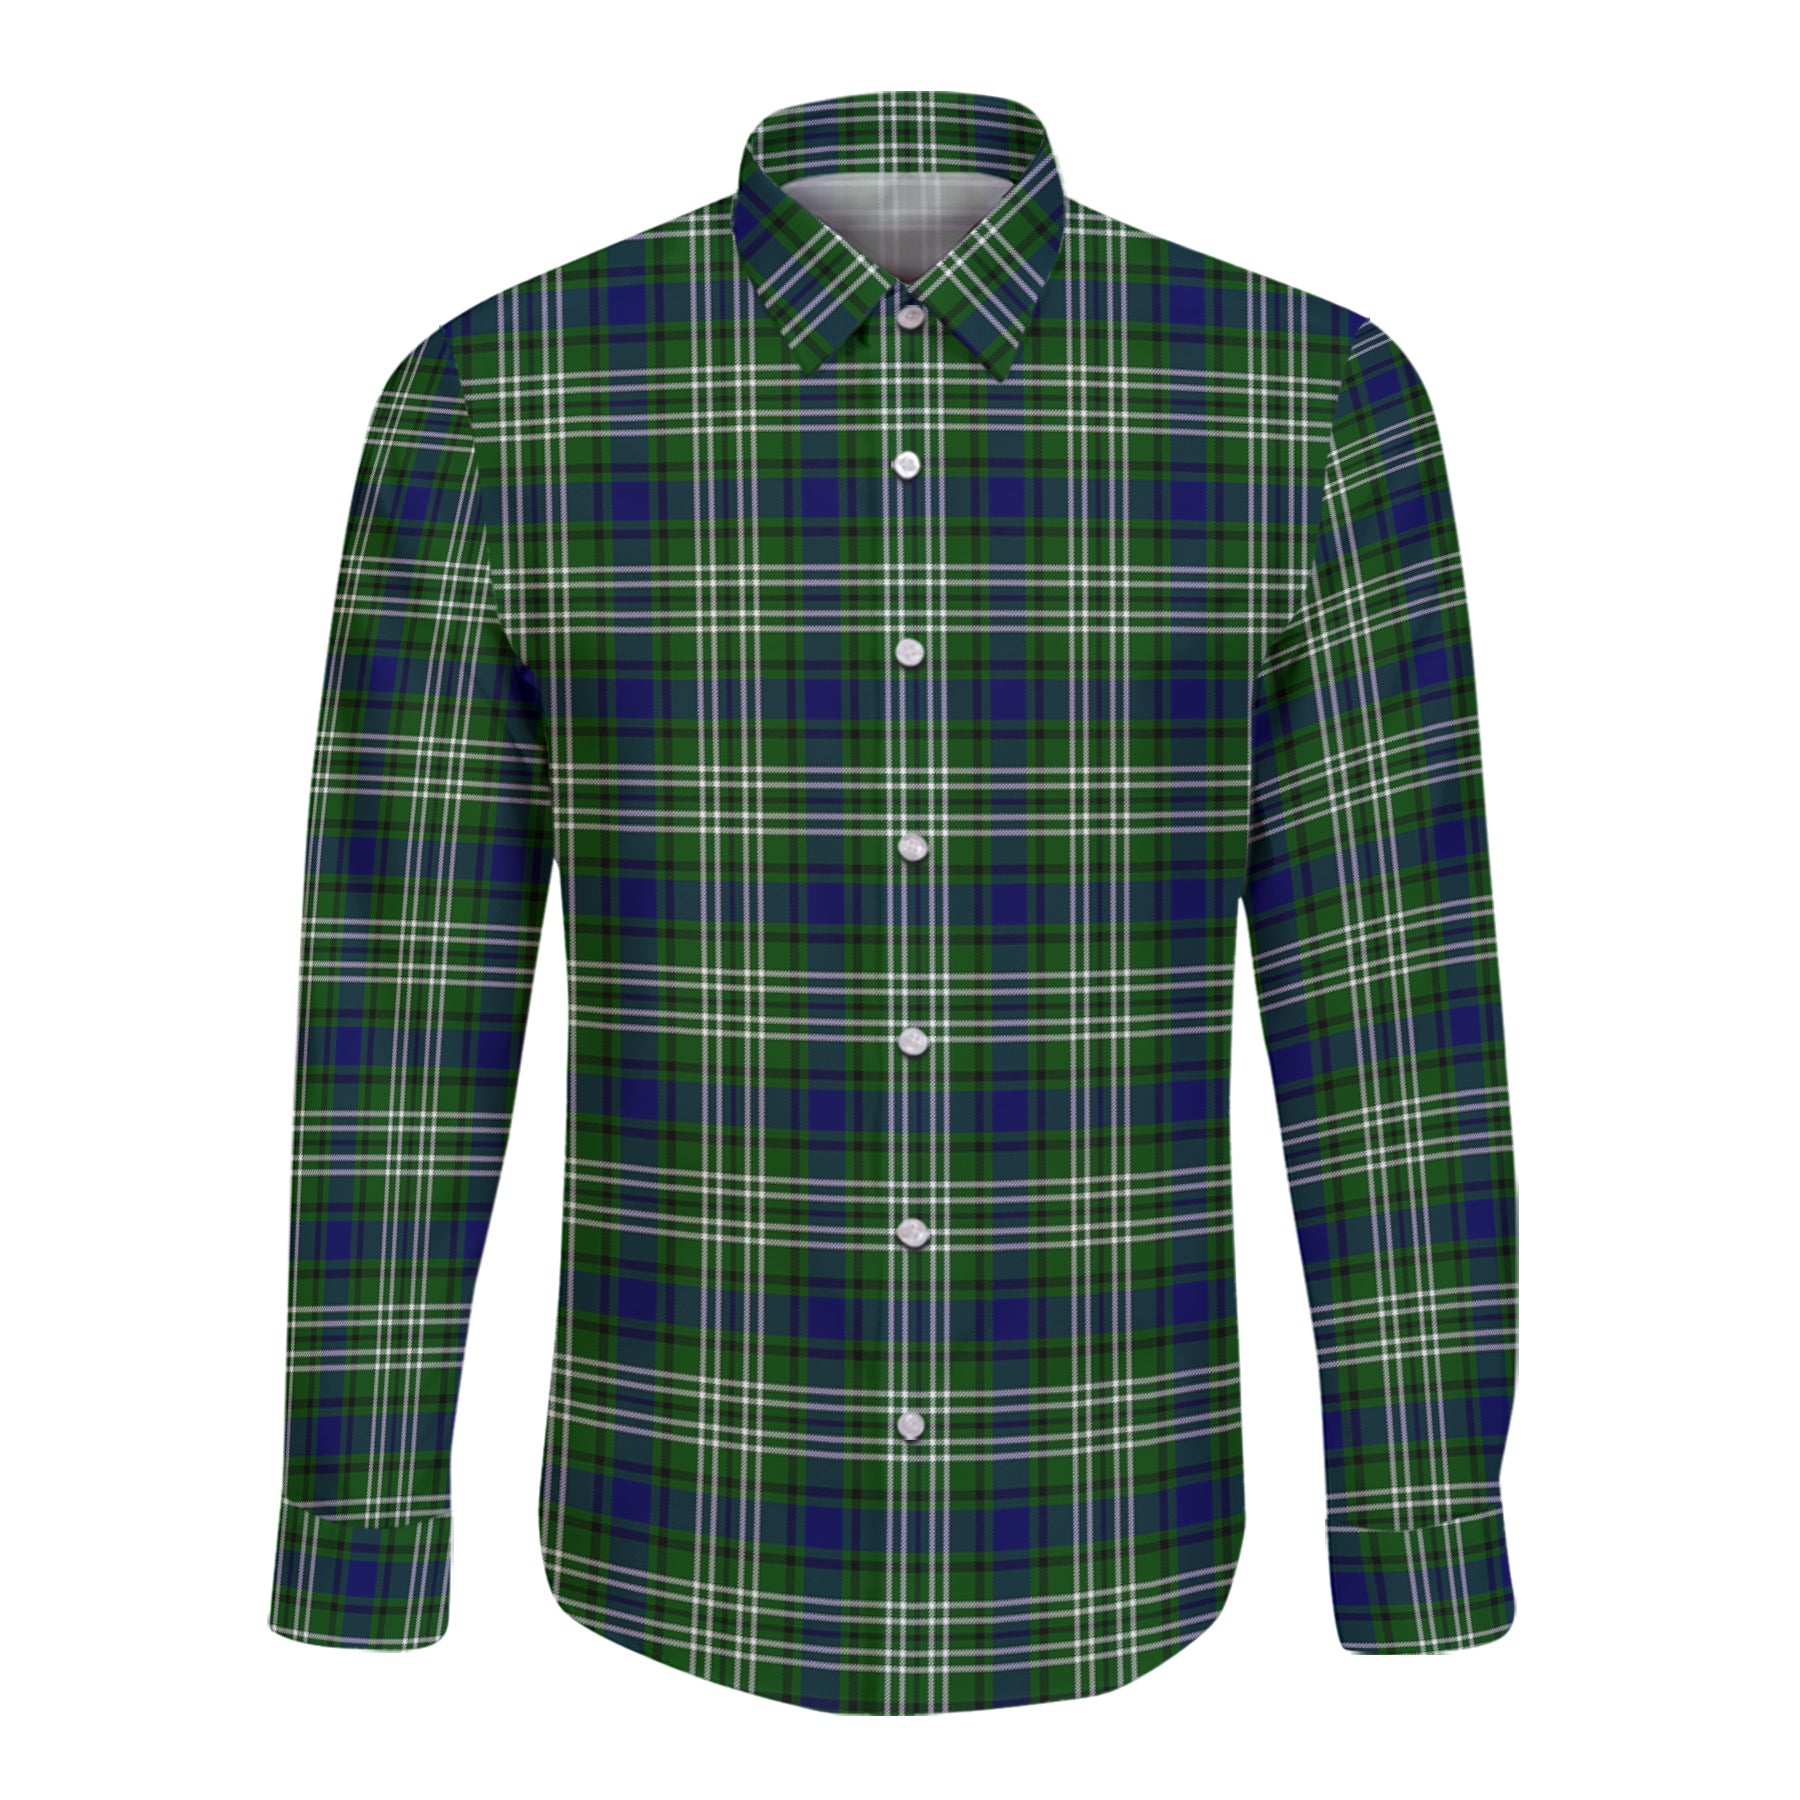 Learmonth Tartan Long Sleeve Button Up Shirt K23